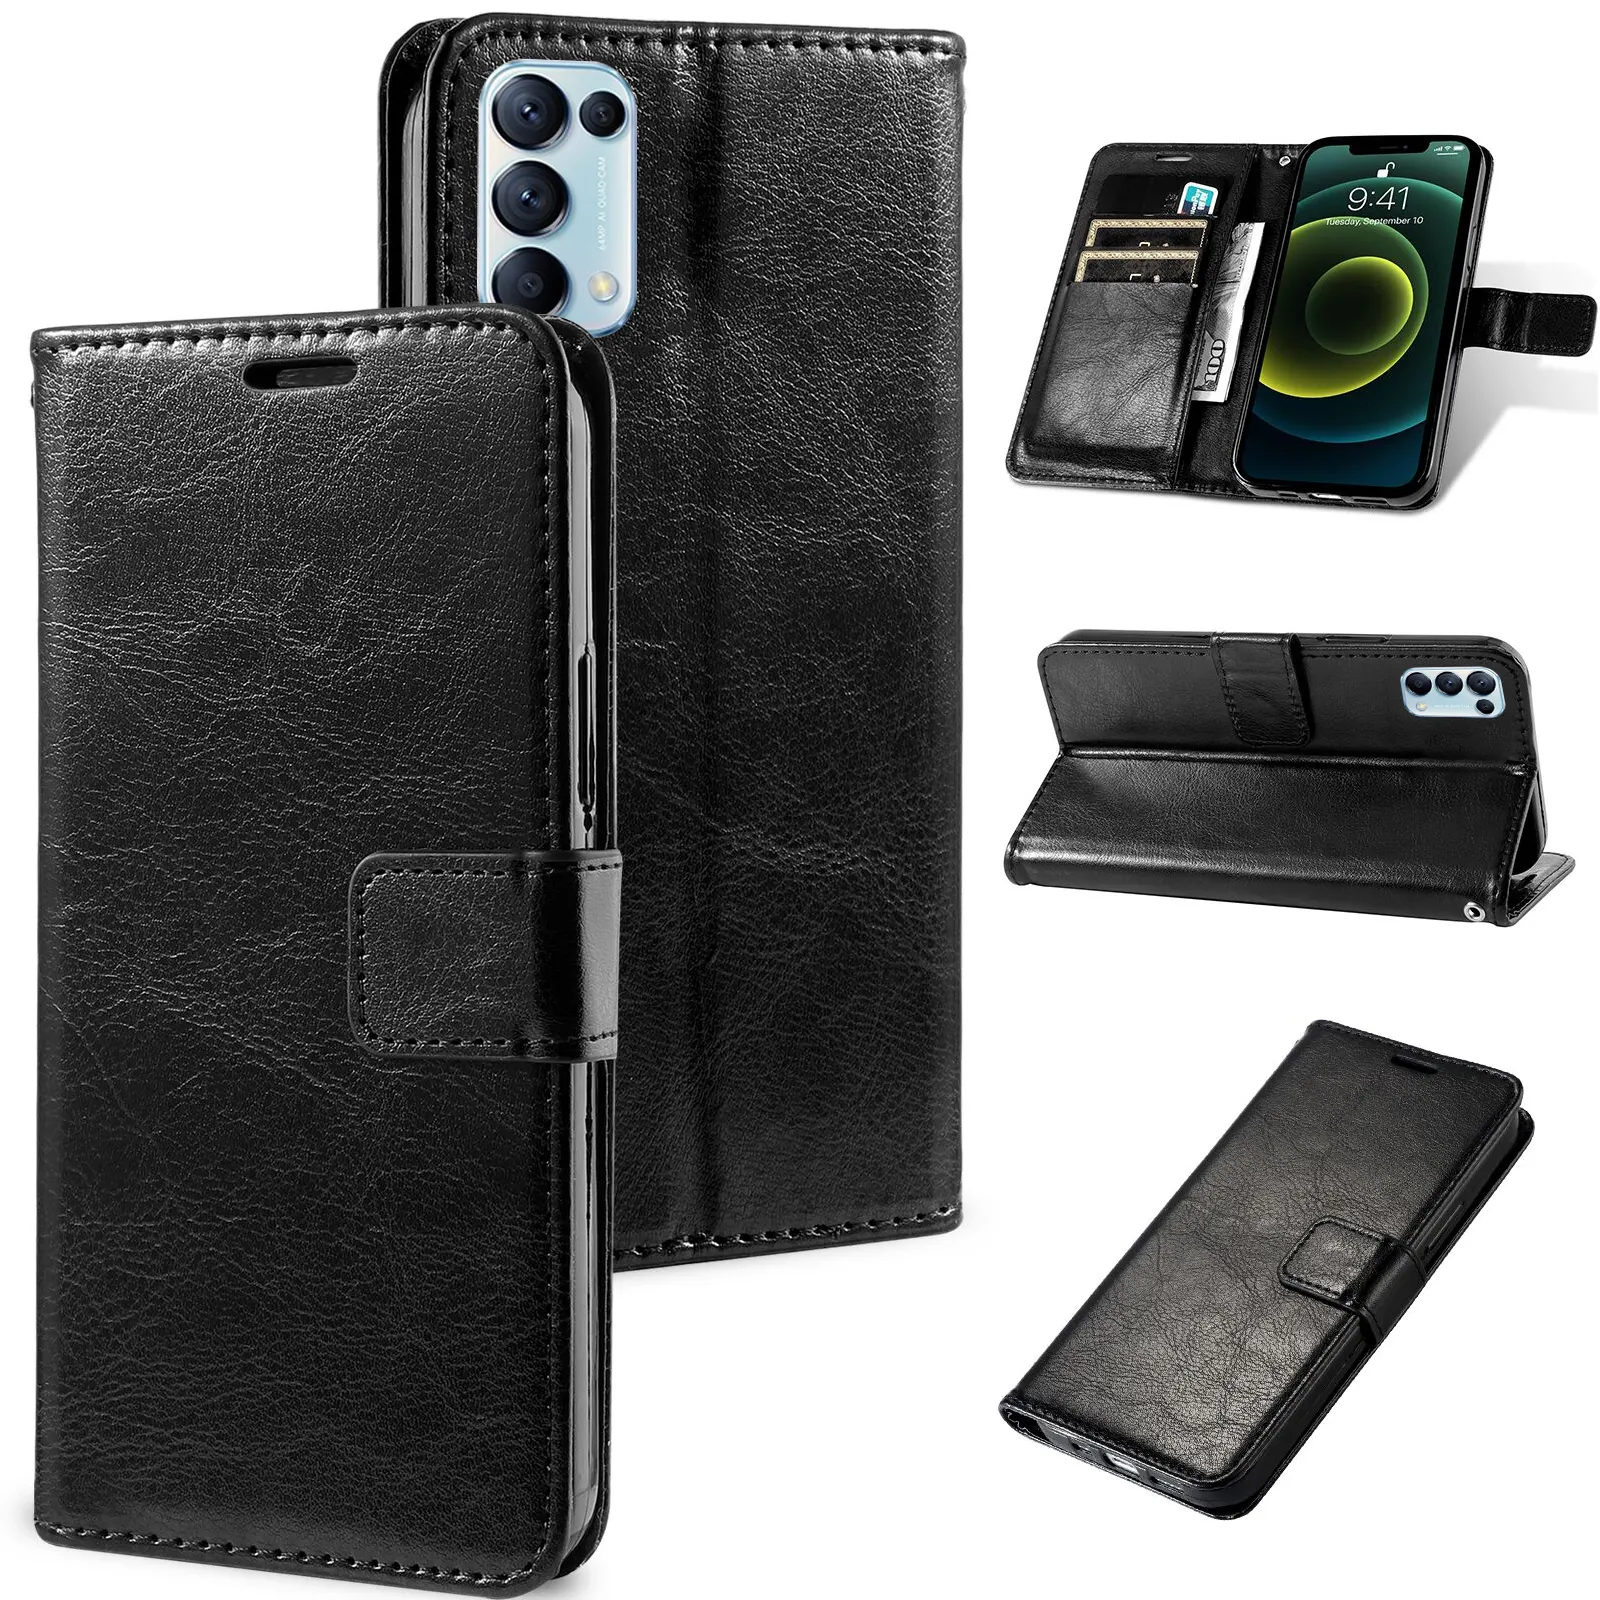 Cepler depolama kredi kartı yuvaları ile açılır deri kılıf cüzdan telefon kılıfı Nokia X5 X6 X7 7 C3 C2 için Kickstand durumda 5.3 5.1